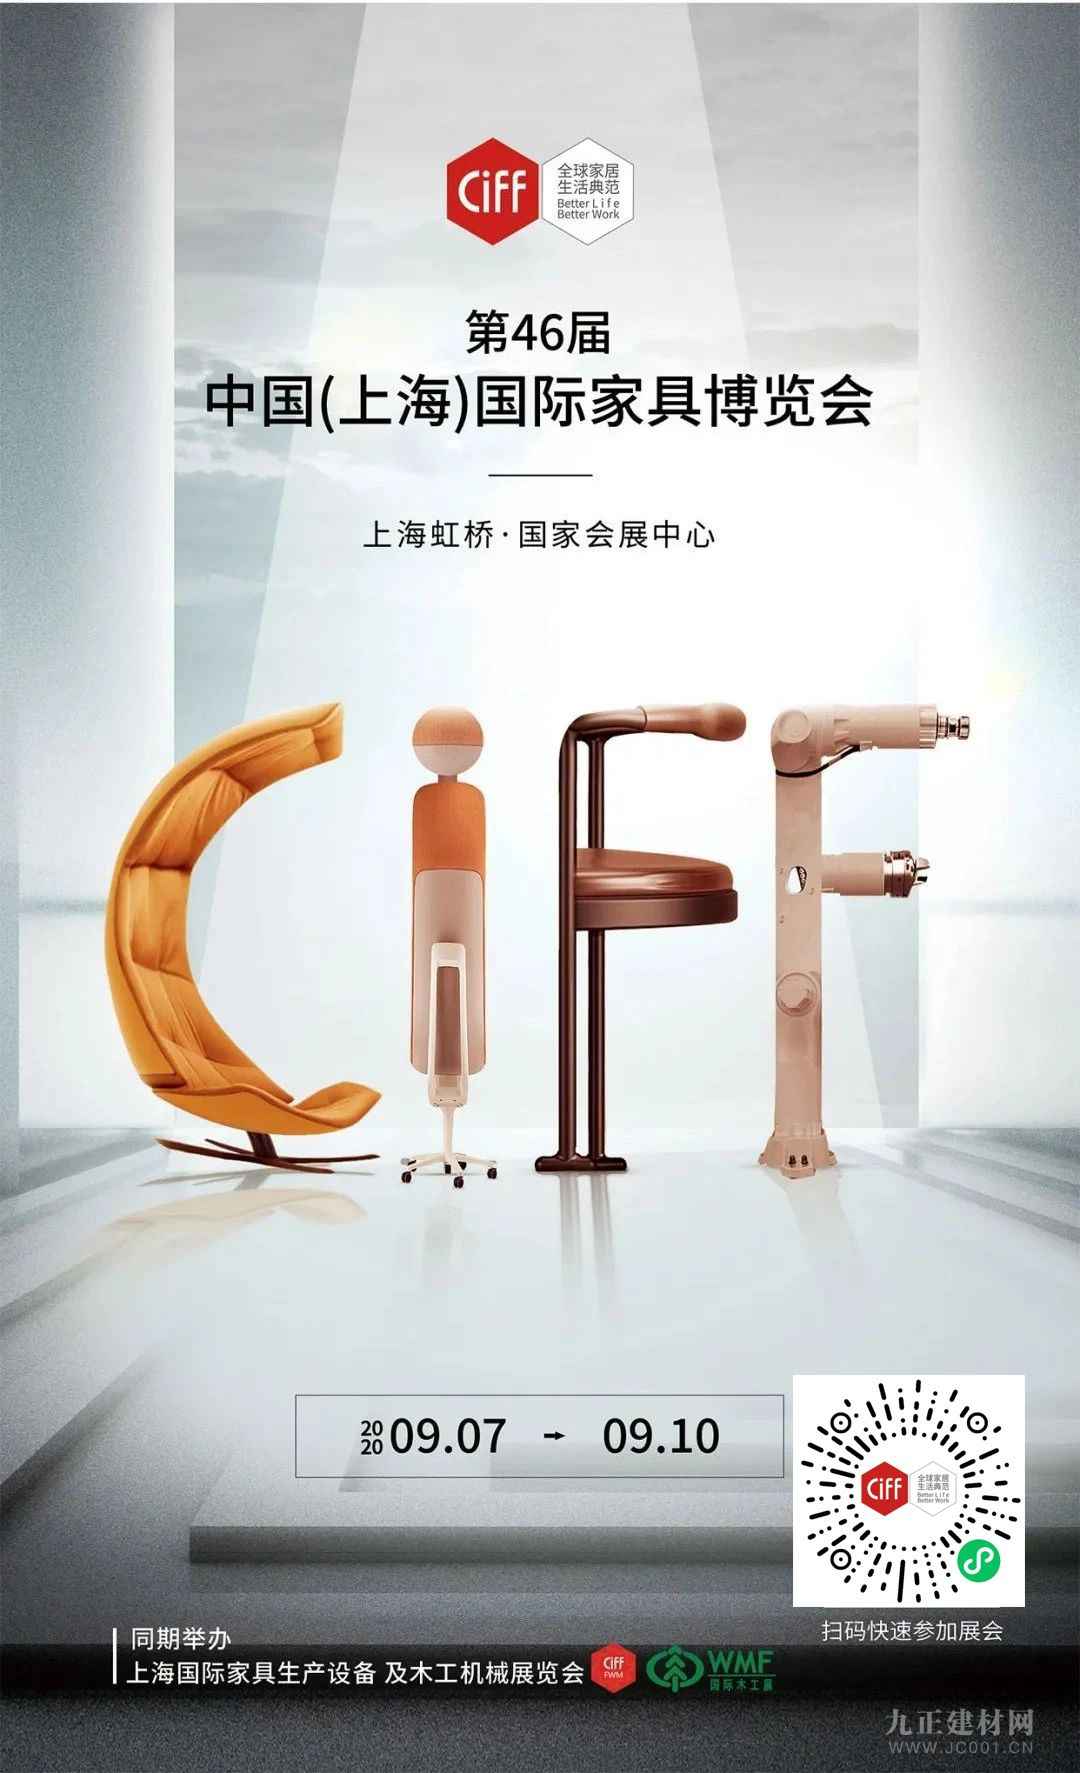  CIFF 上海虹桥丨重要通知！携身份证、随申码赴虹桥之约吧！